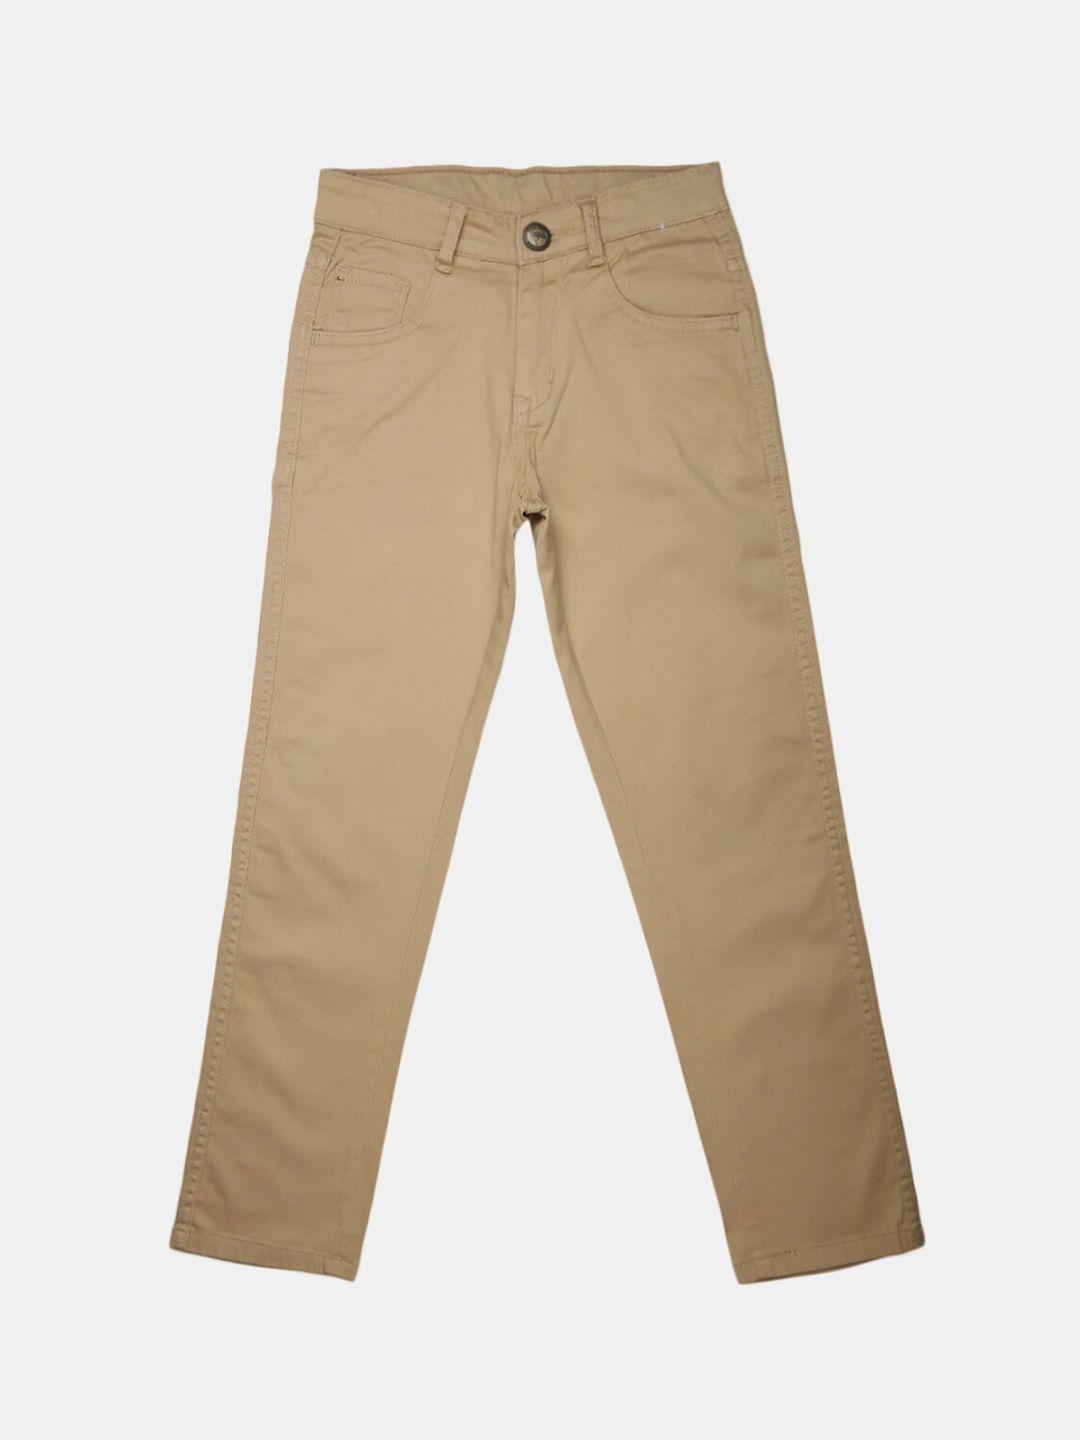 V-Mart Boys Khaki Classic Trousers